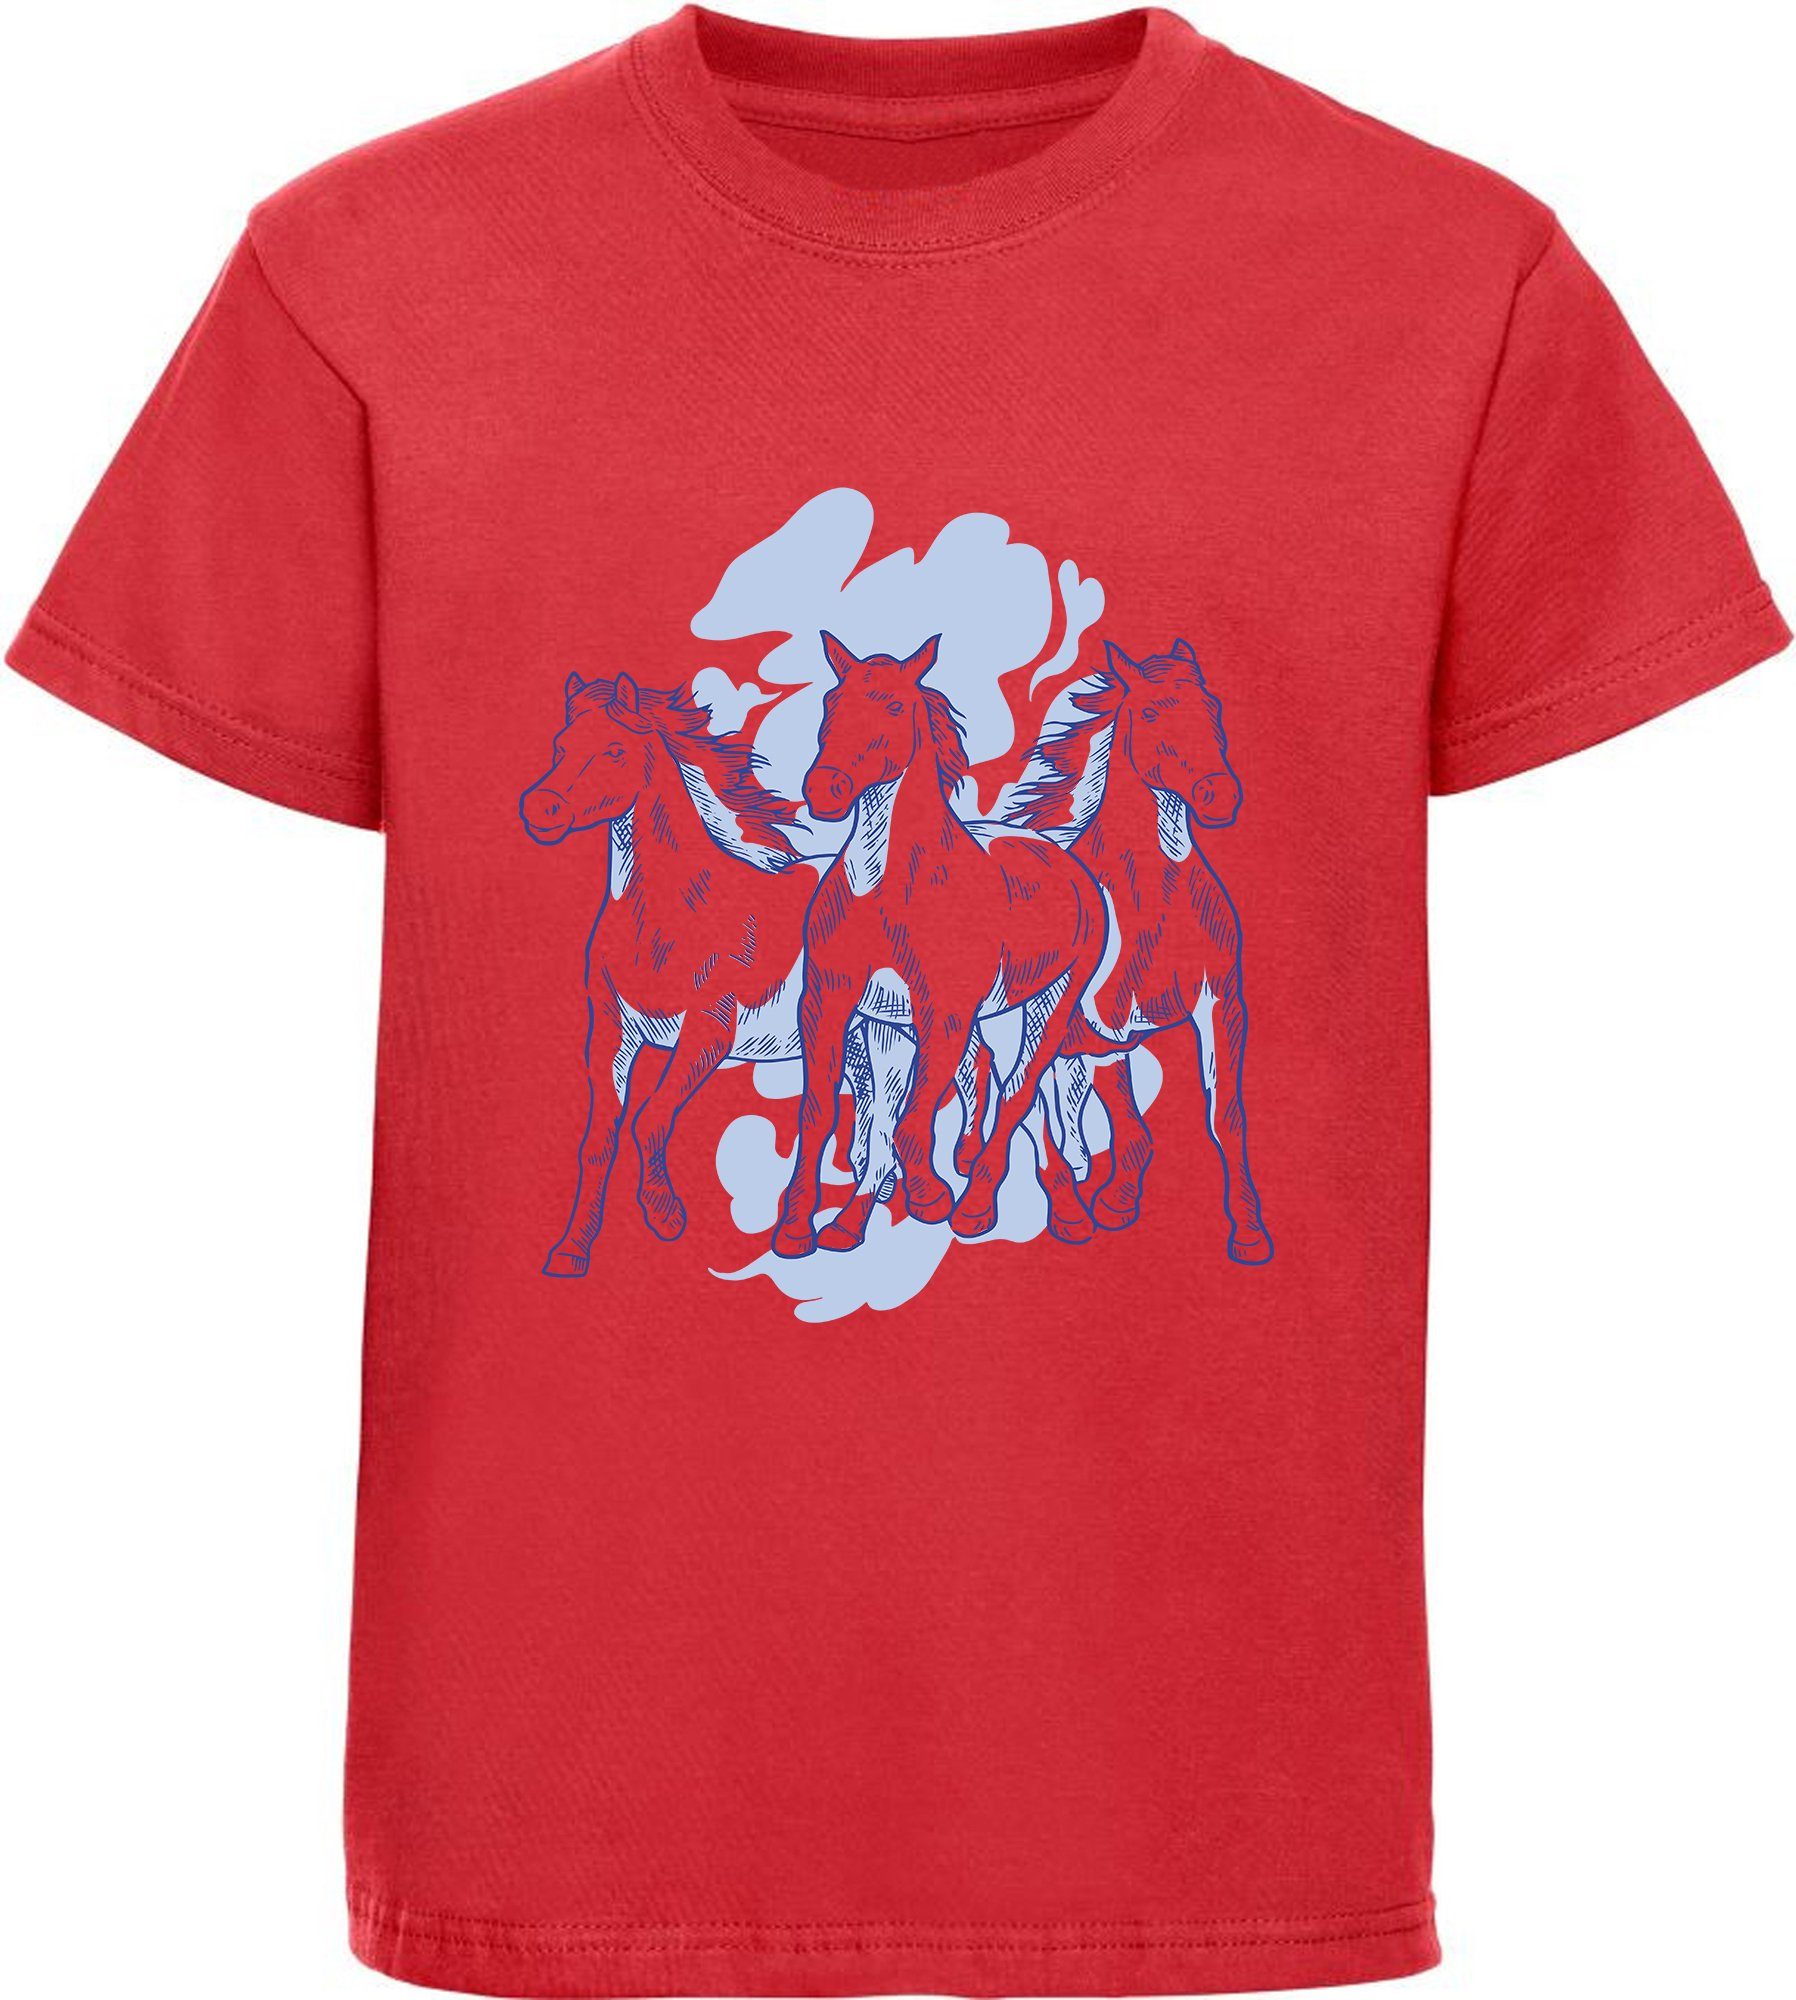 MyDesign24 Print-Shirt bedrucktes Mädchen T-Shirt mit 3 Pferden Baumwollshirt mit Aufdruck, i141 rot